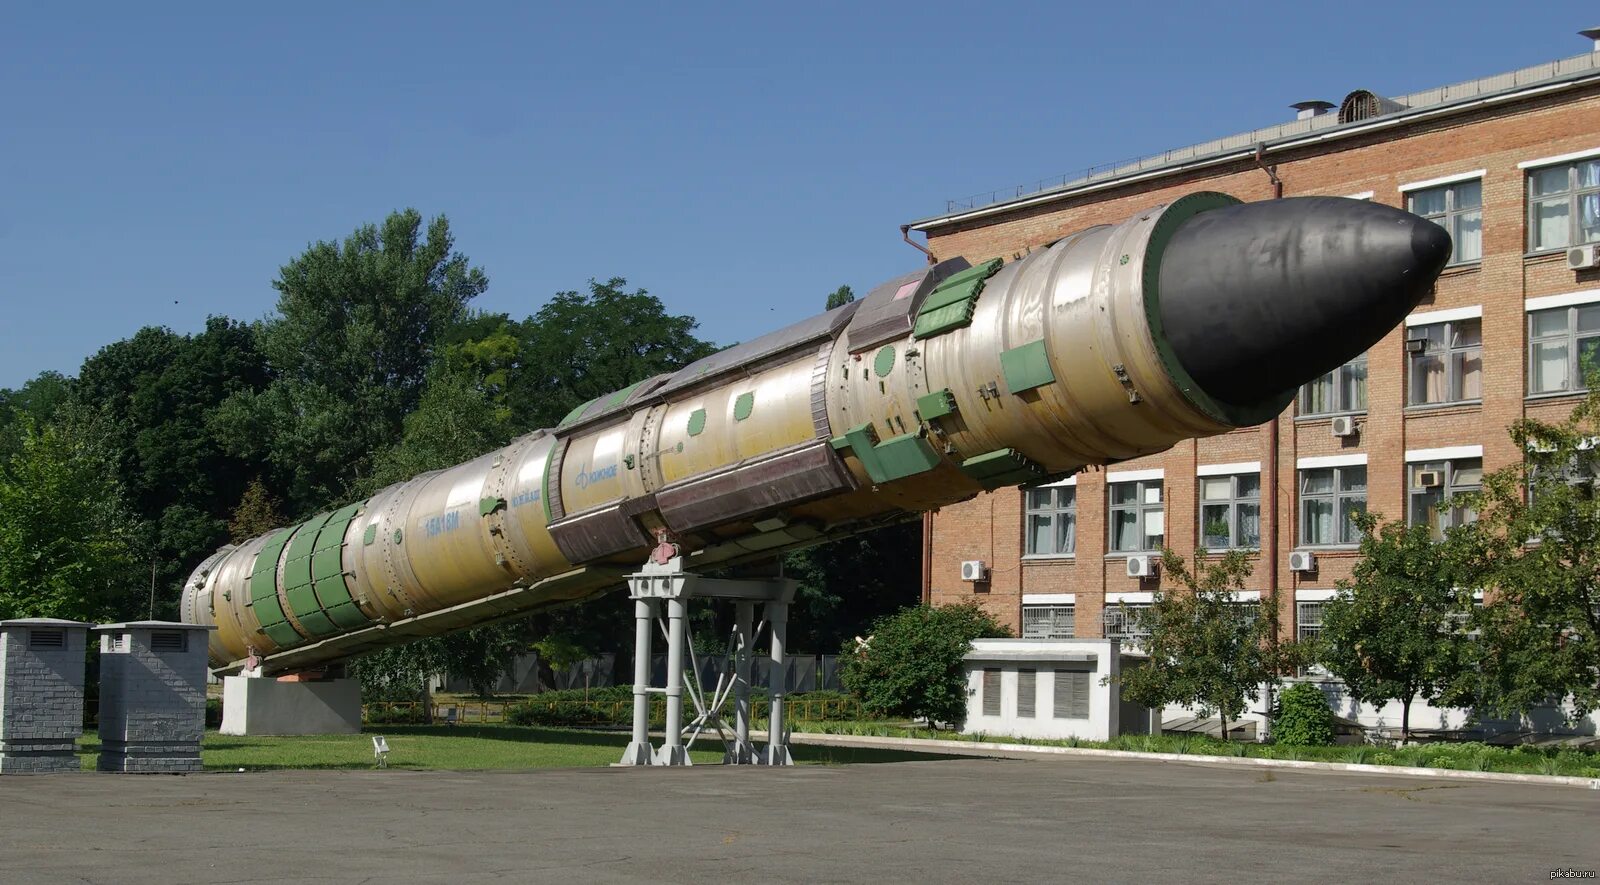 Ракета сс. Межконтинентальная баллистическая ракета РС-20 «Воевода». Р-36м баллистическая ракета. Межконтинентальная баллистическая ракета р-36м2 «Воевода». Ракета р-36м сатана.